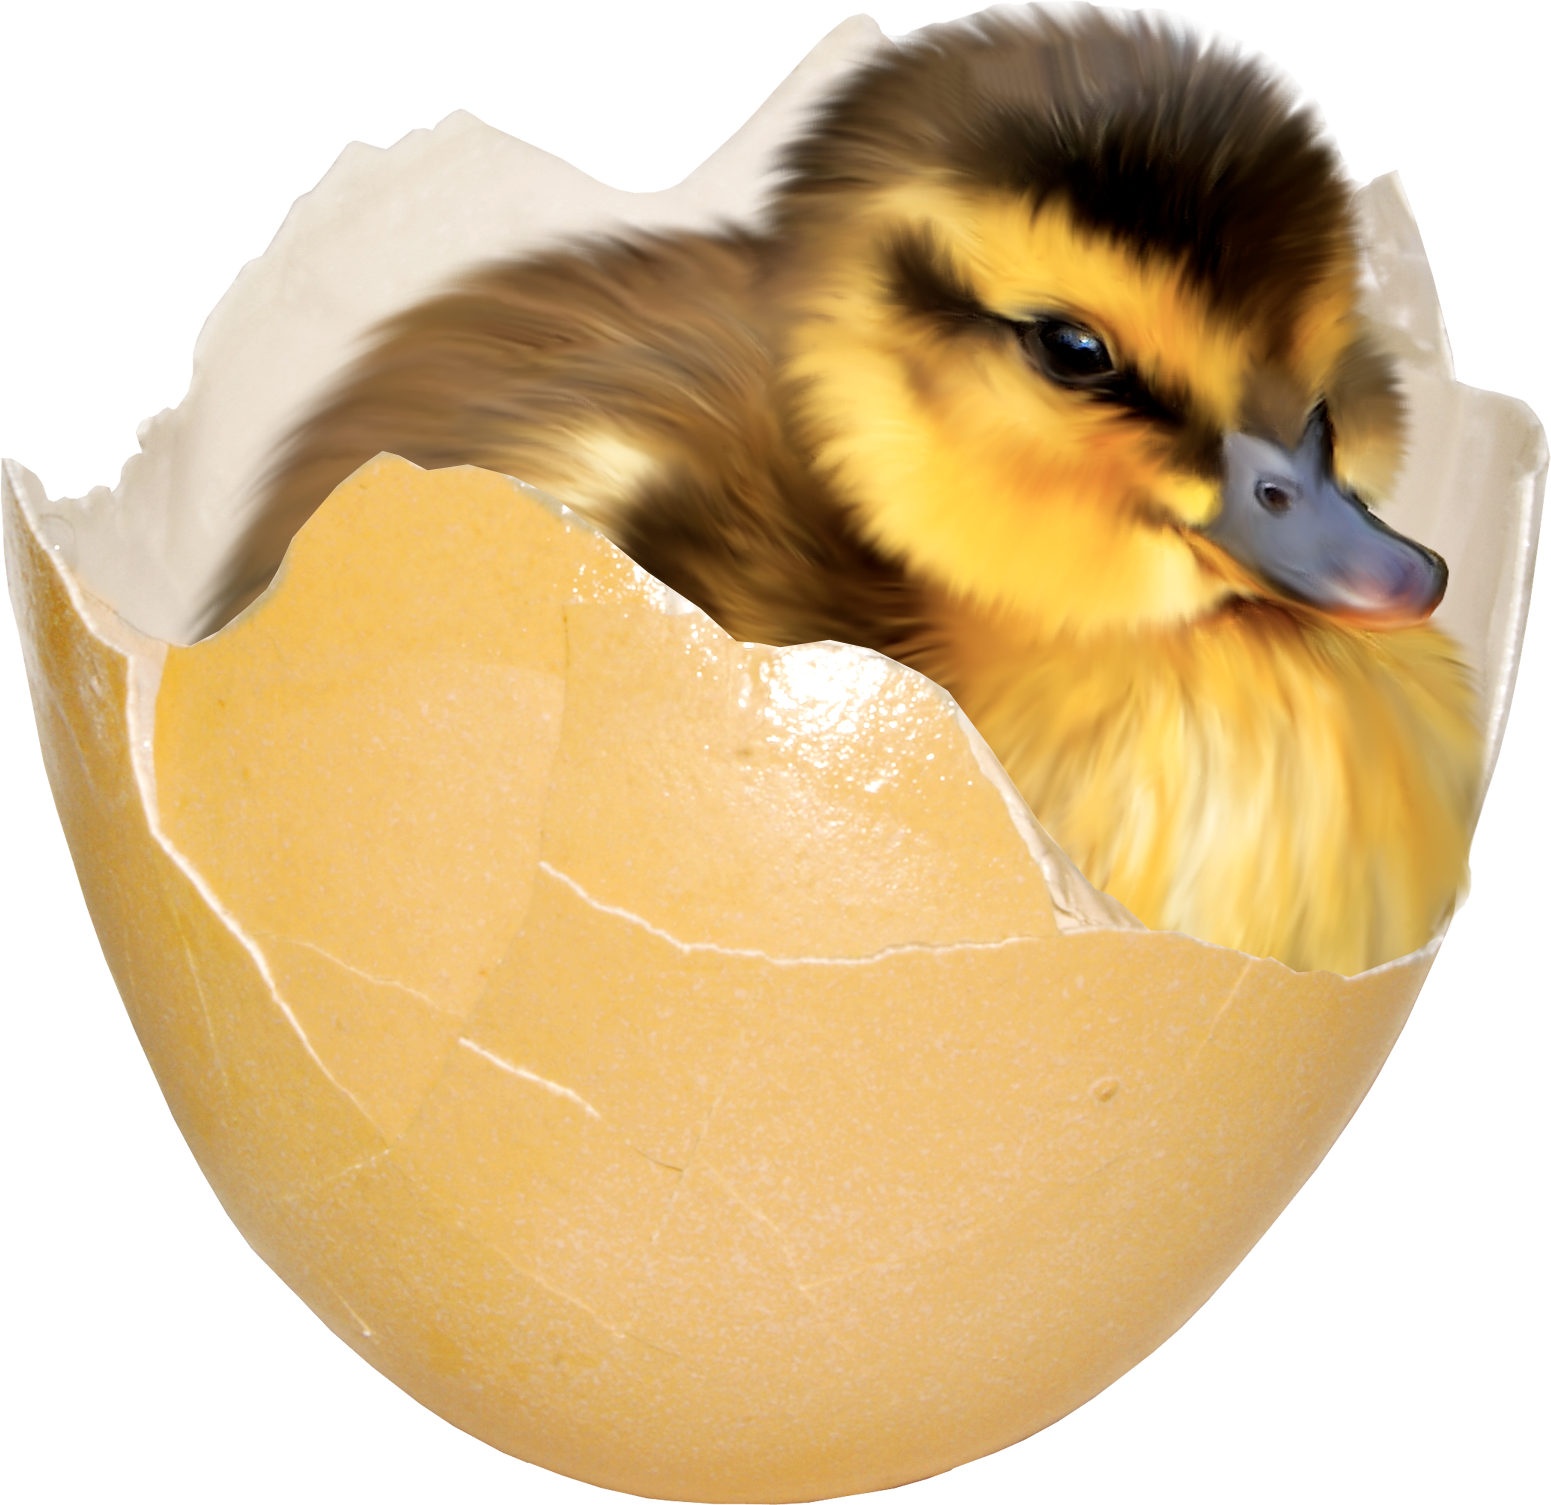 Утенок вылупляется из яйца. Утенок в яйце. Утята вылупляются. Утенок вылупился. Птица вылупляется из яйца